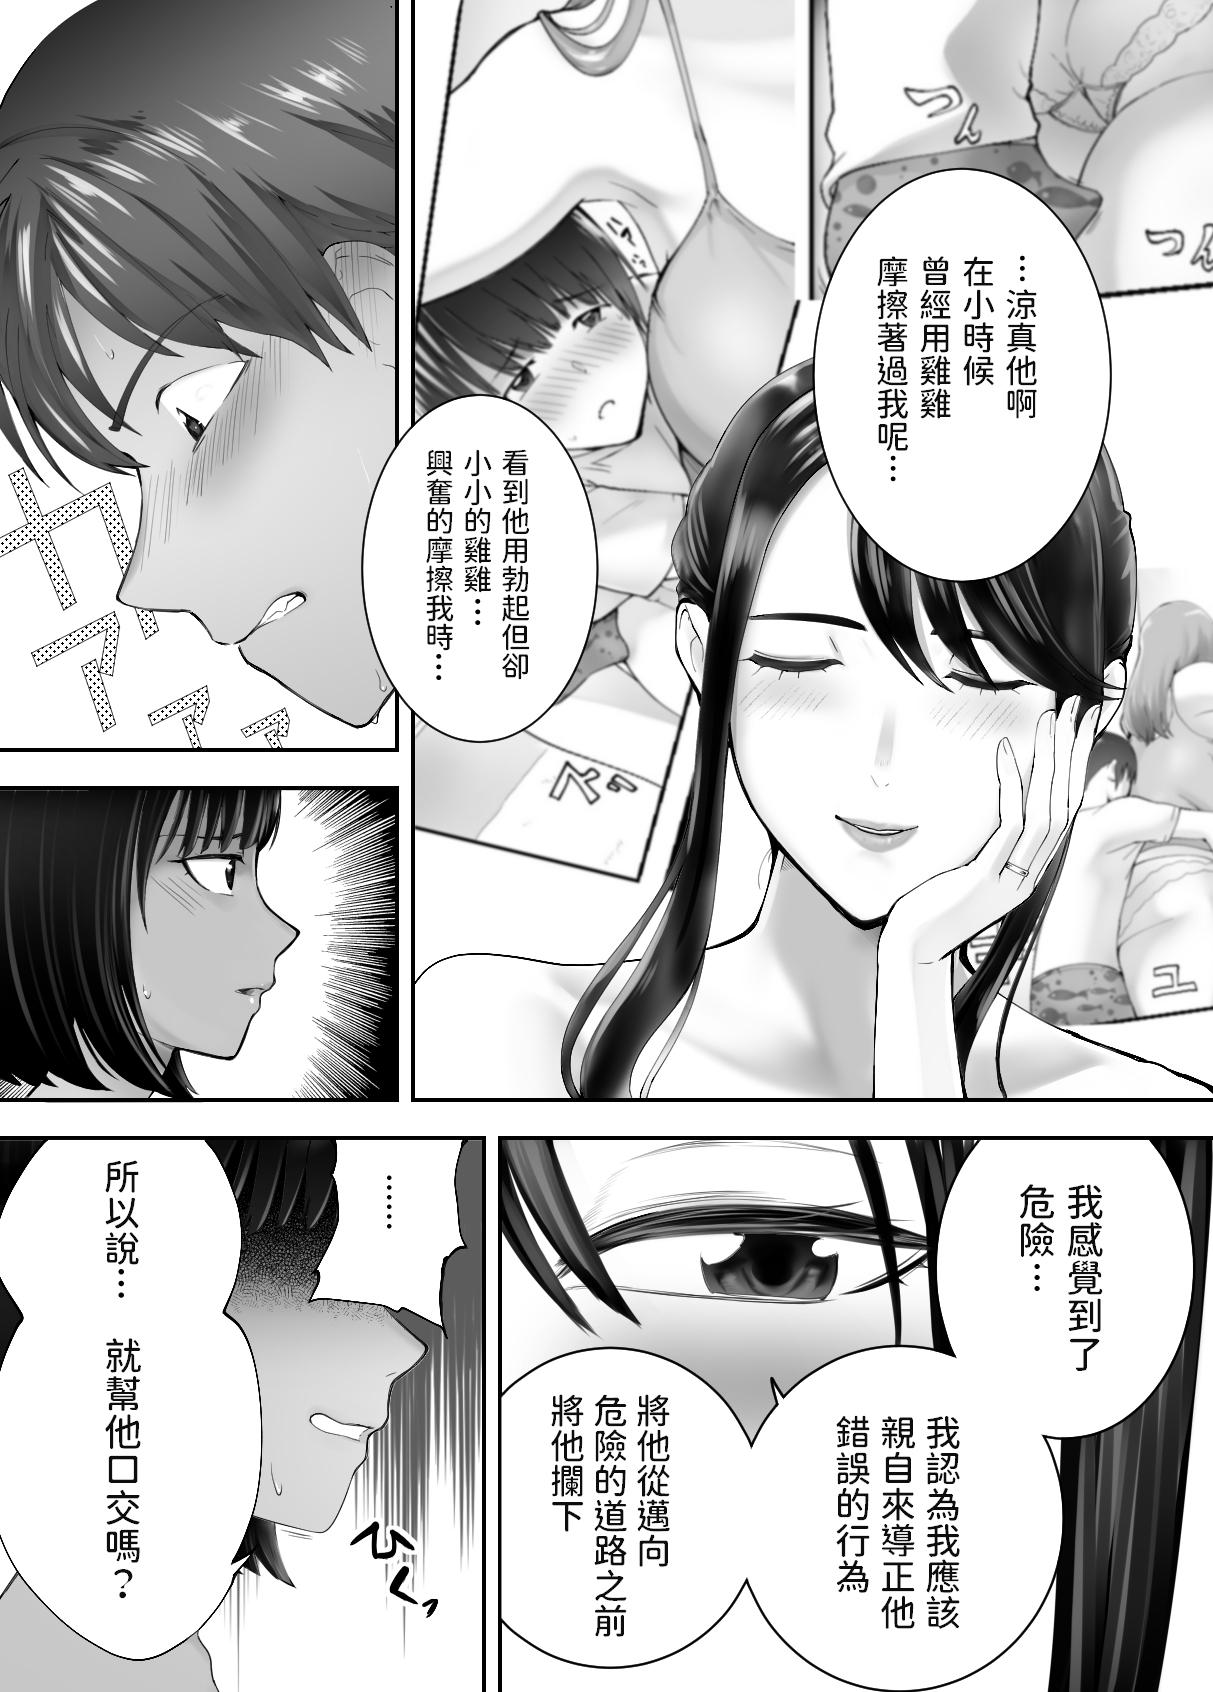 Gayemo Osananajimi ga Mama to Yatte imasu. 7 - Original Gay Outdoor - Page 6